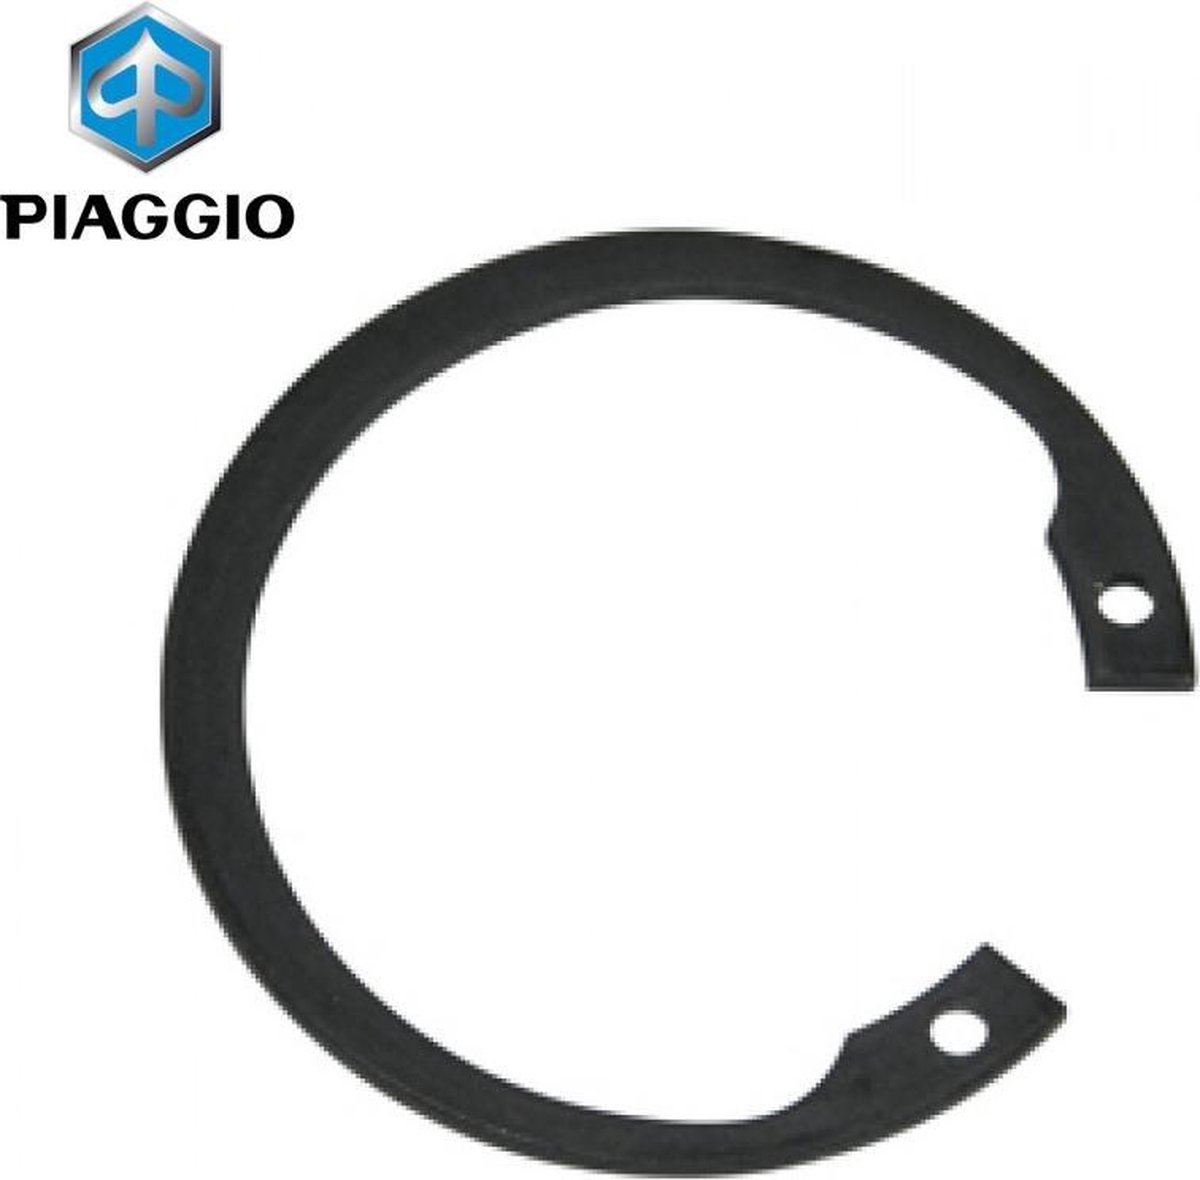 Borgclip OEM 47mm | Piaggio / Vespa